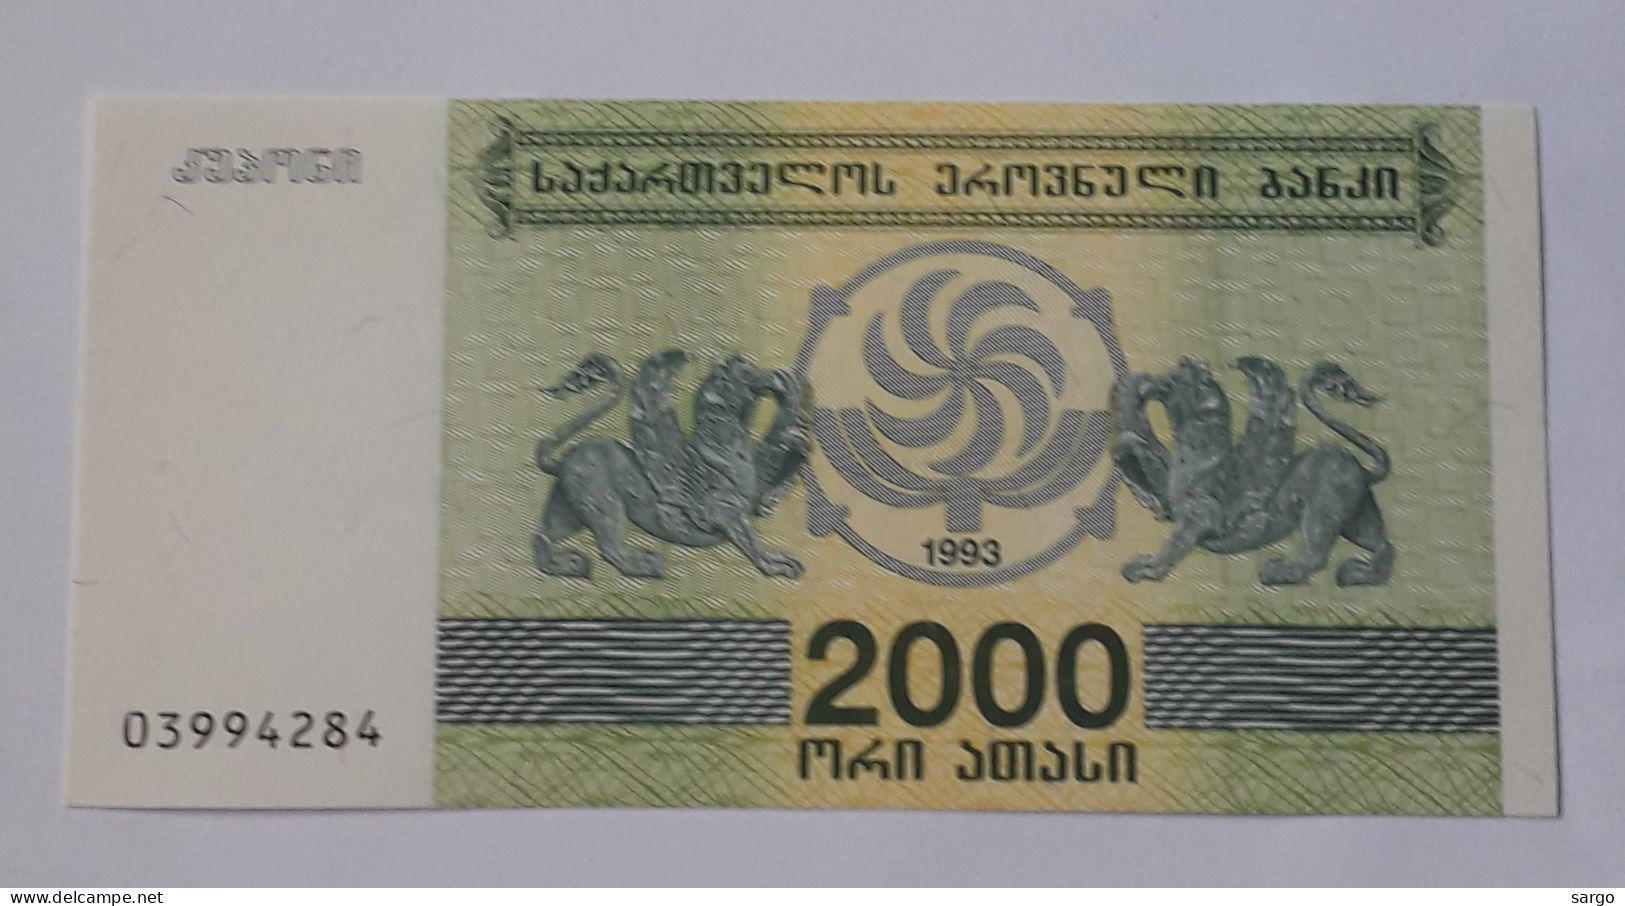 GEORGIA - 2.000 LARIS - 1993  - P 44 - UNC - BANKNOTES - PAPER MONEY - CARTAMONETA - - Georgia